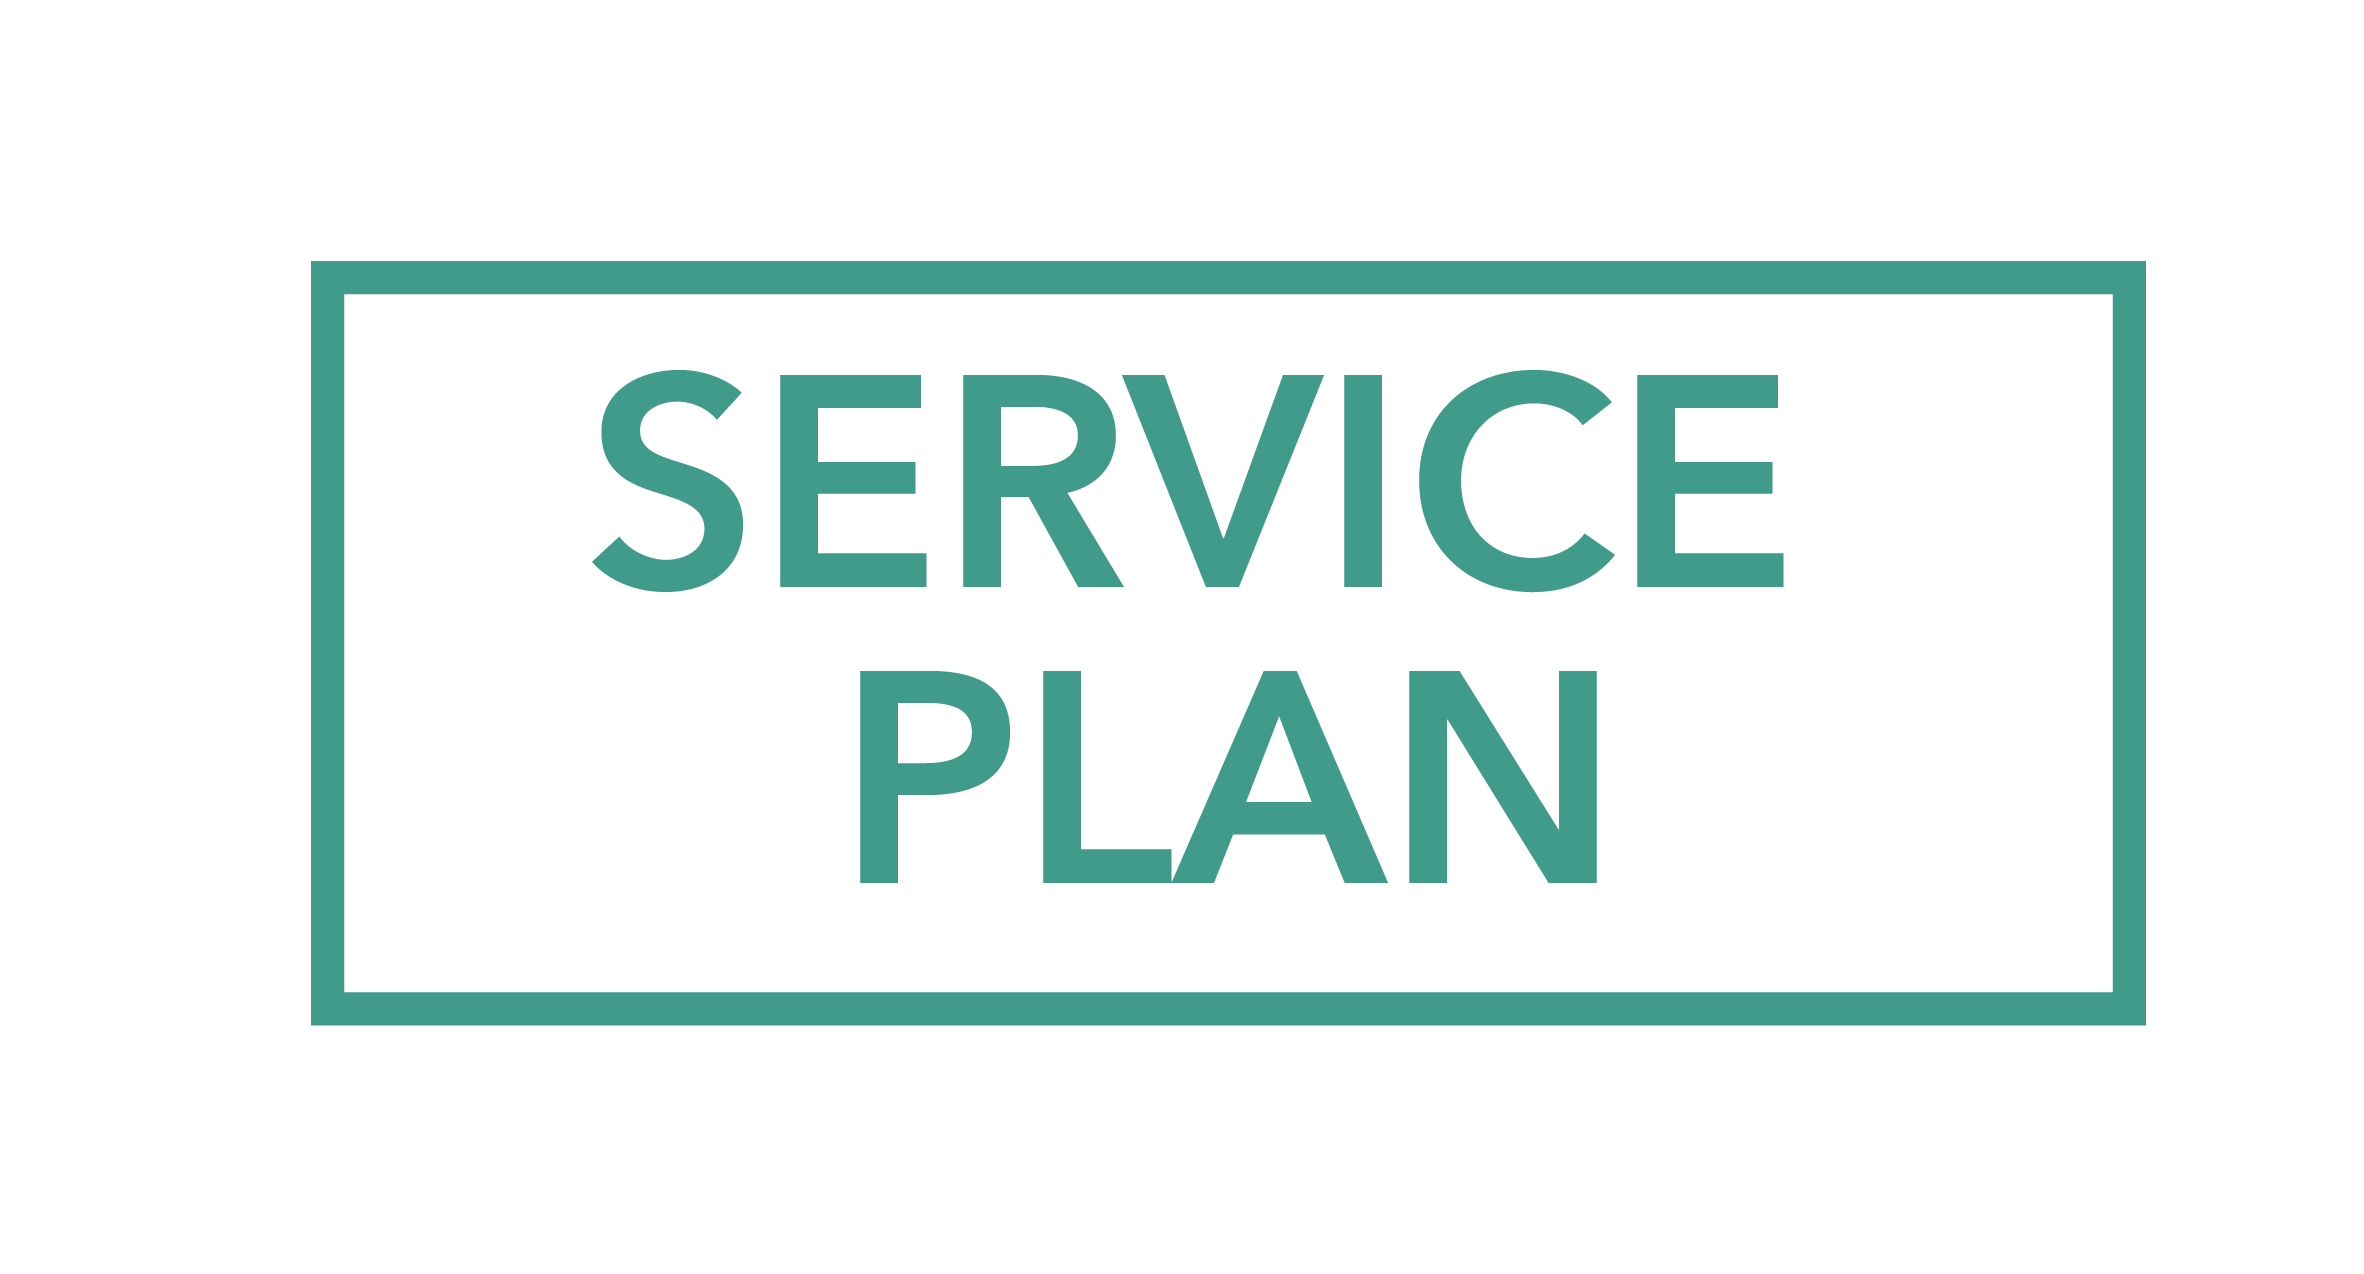 Service Plan